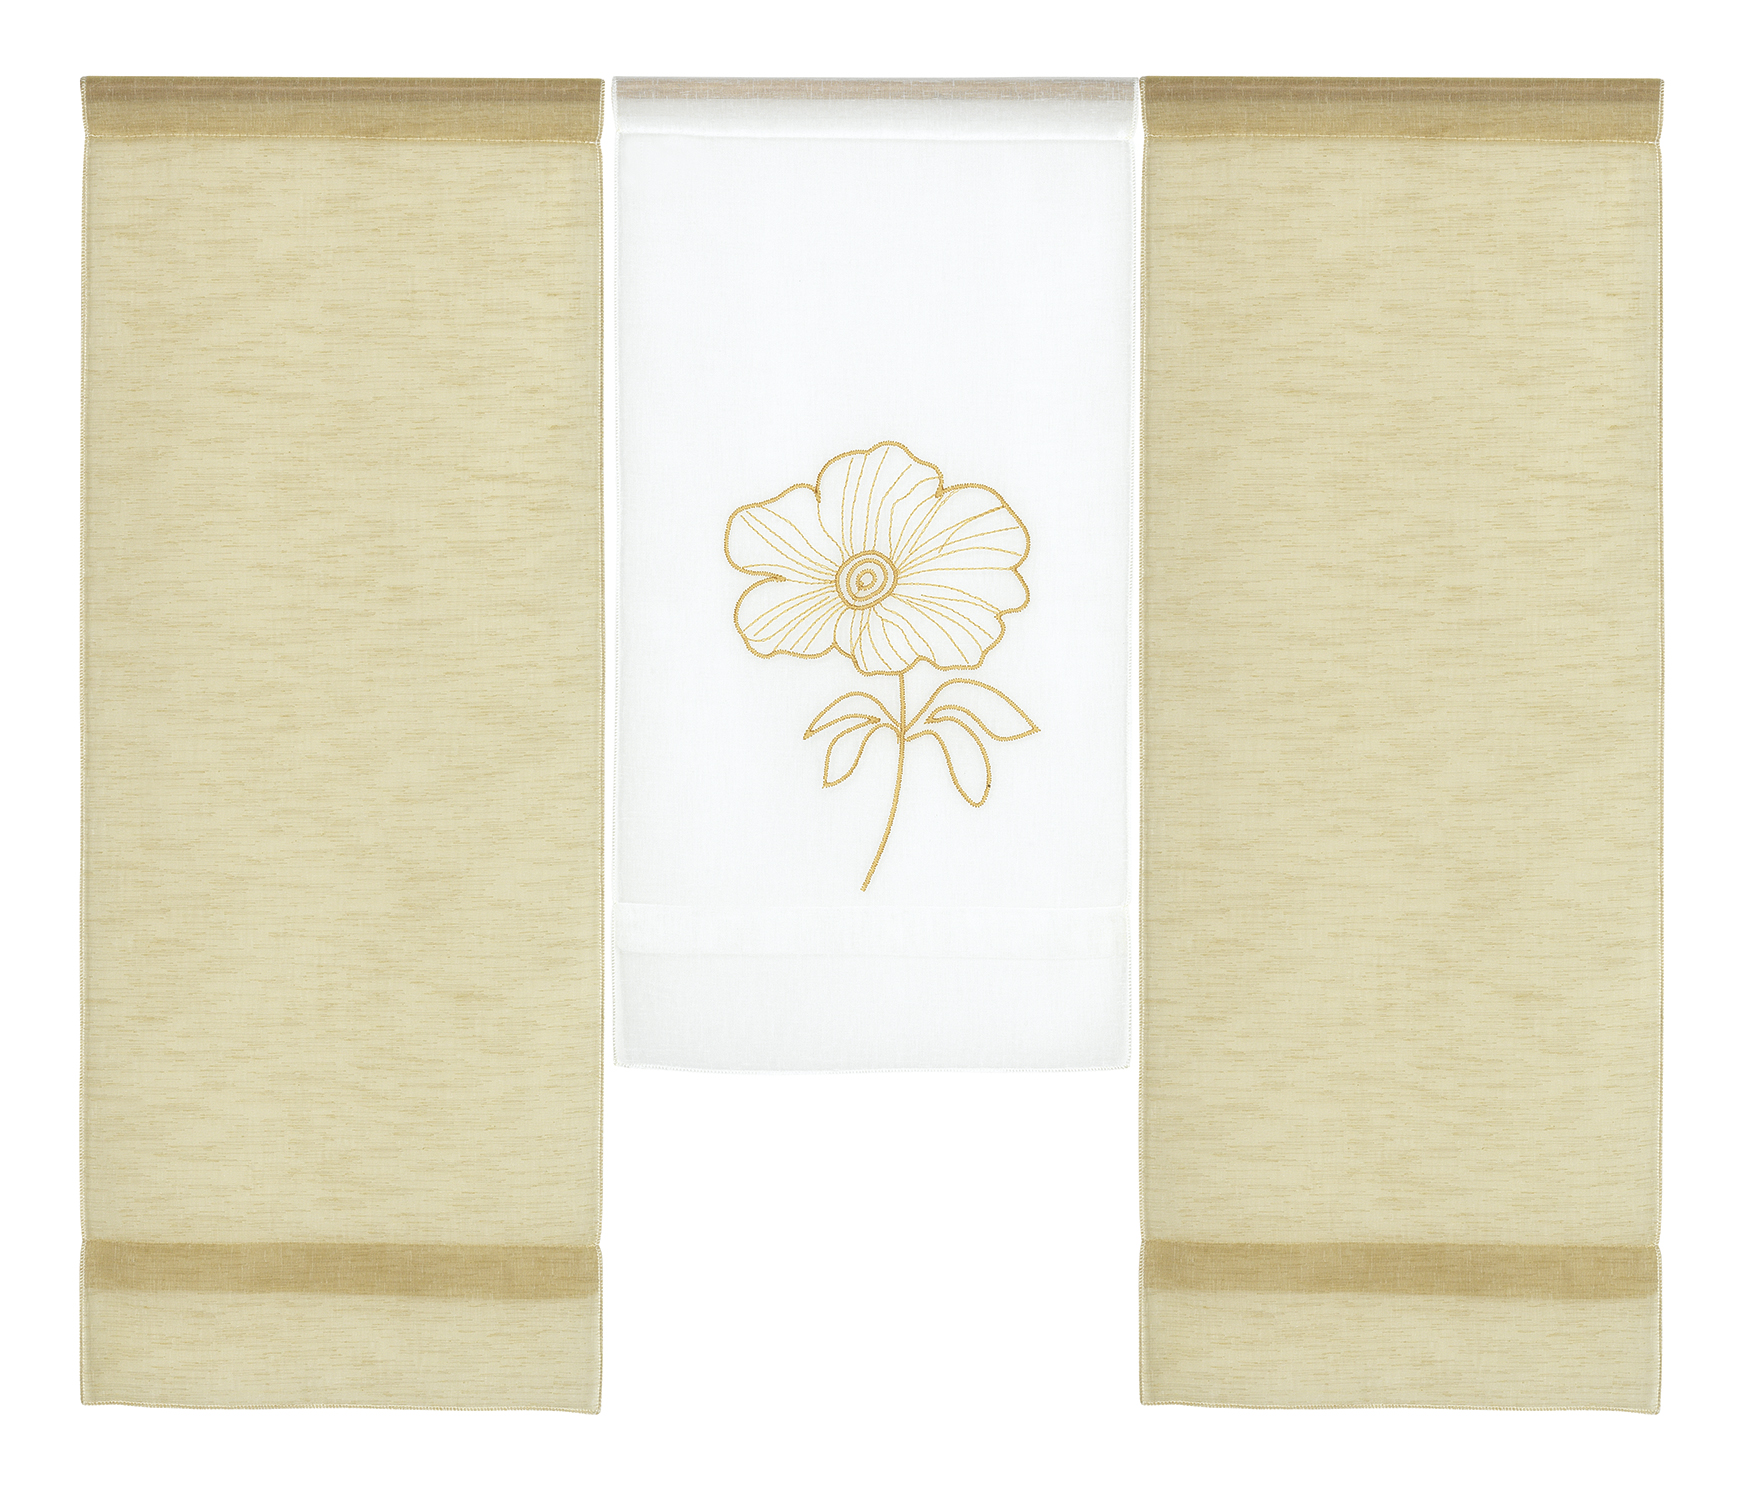 Scheibengardine modern 3er Set Mini Flächenvorhang Stickerei Blume Senfgelb Weiß Leinenoptik 4042 80x90 cm 